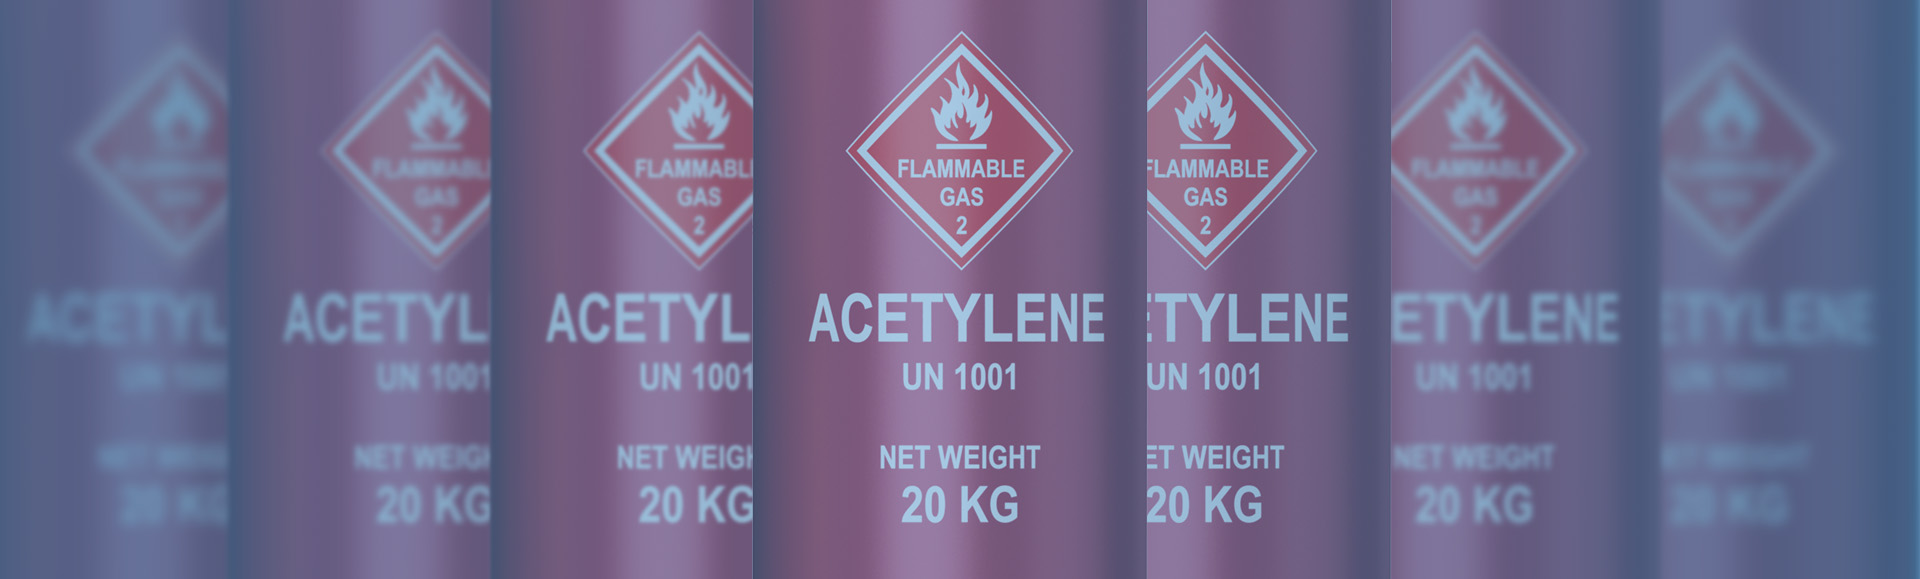 IMG - Buy Acetylene Gas Seychelles